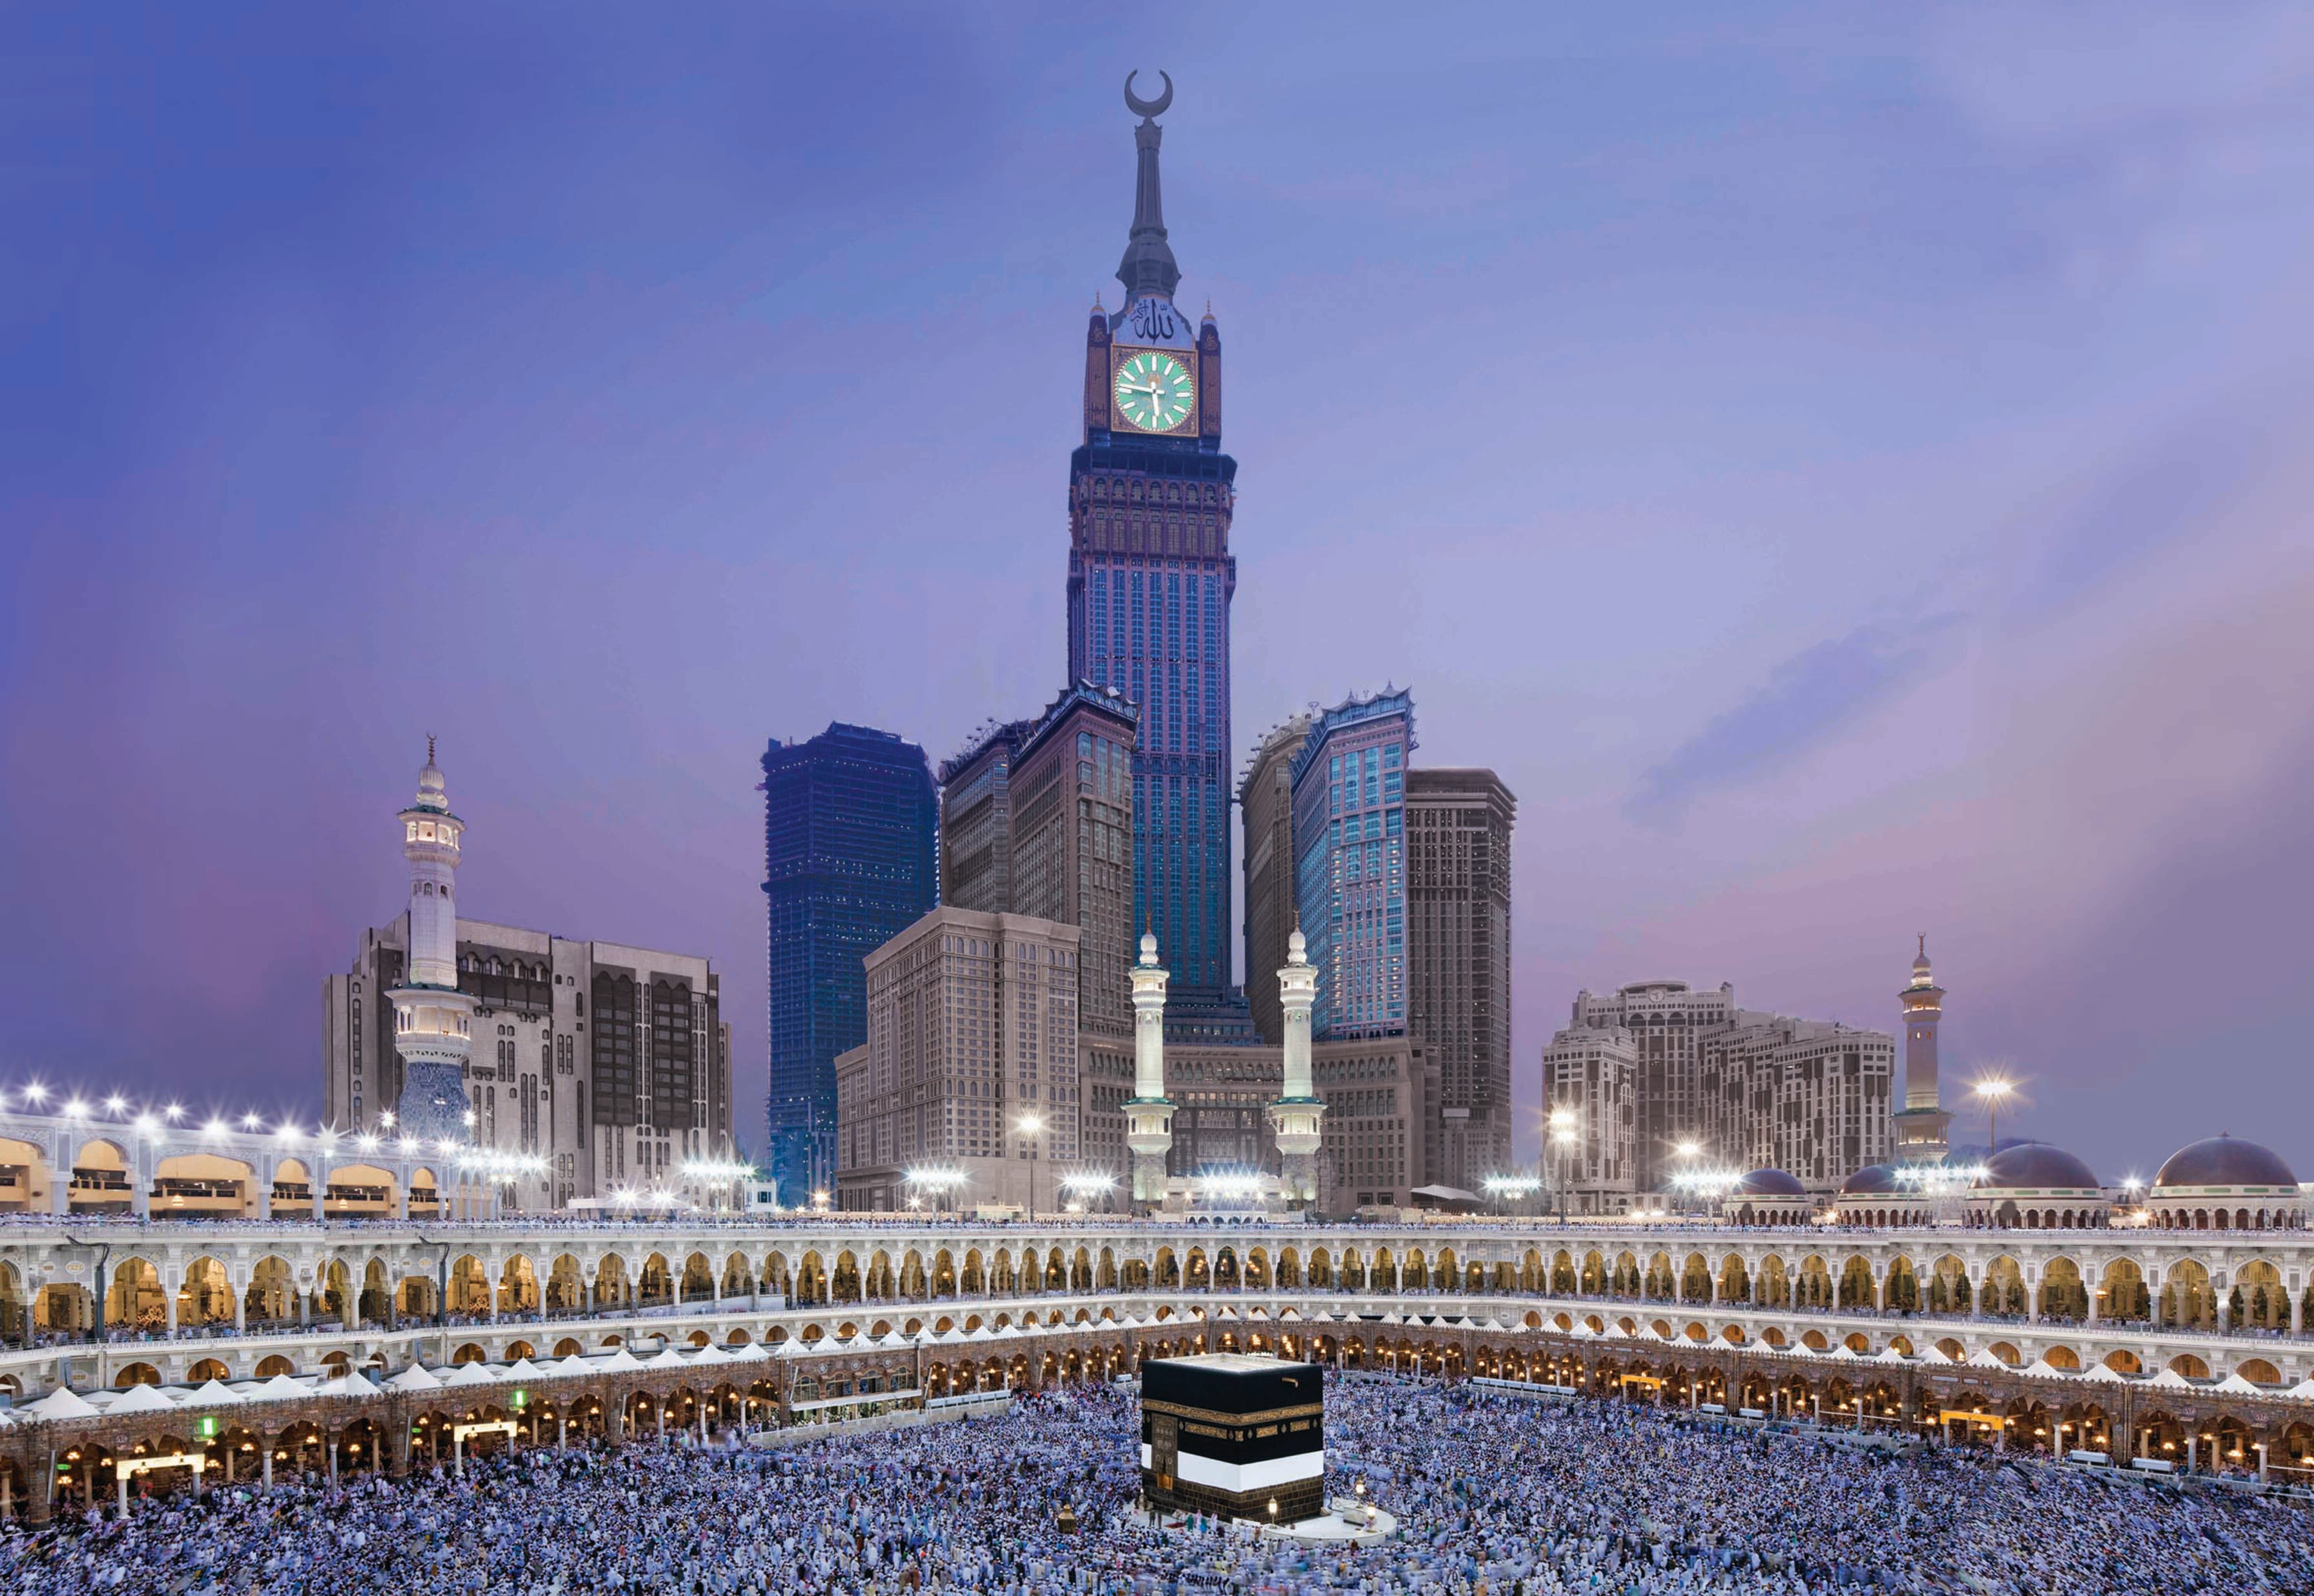 Часы в саудовской аравии. Часовая башня Абрадж Аль-Бейт. Часовой башне Абрадж Аль-Бейт в Мекке. Саудовская Аравия Мекка и Медина. Мечеть Кааба и Медина.